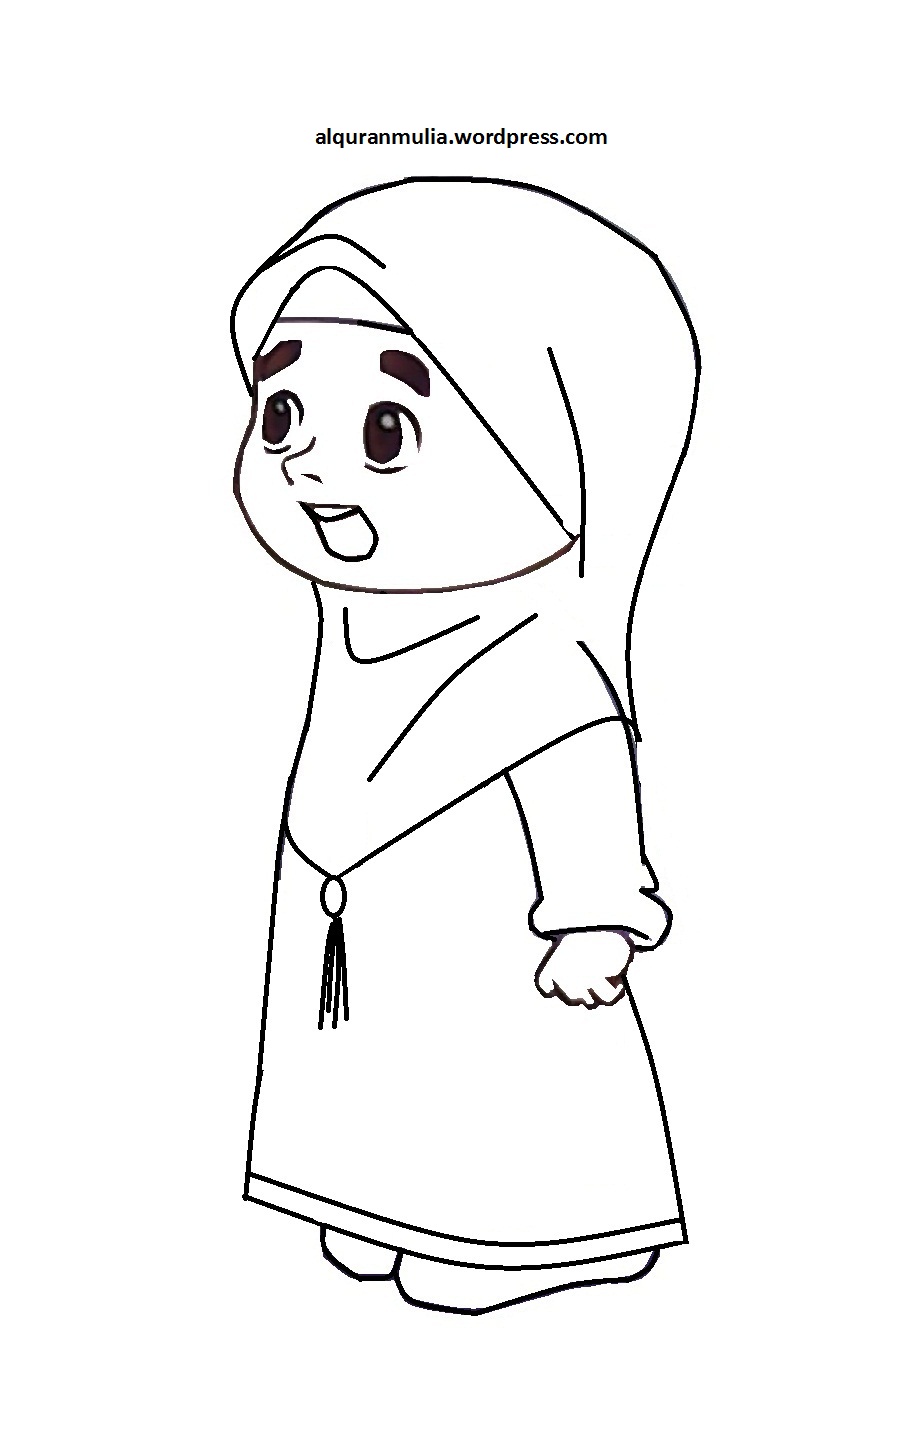 Gambar Mewarnai Gambar Kartun Anak Muslimah 51 Alqur Anmulia Baju